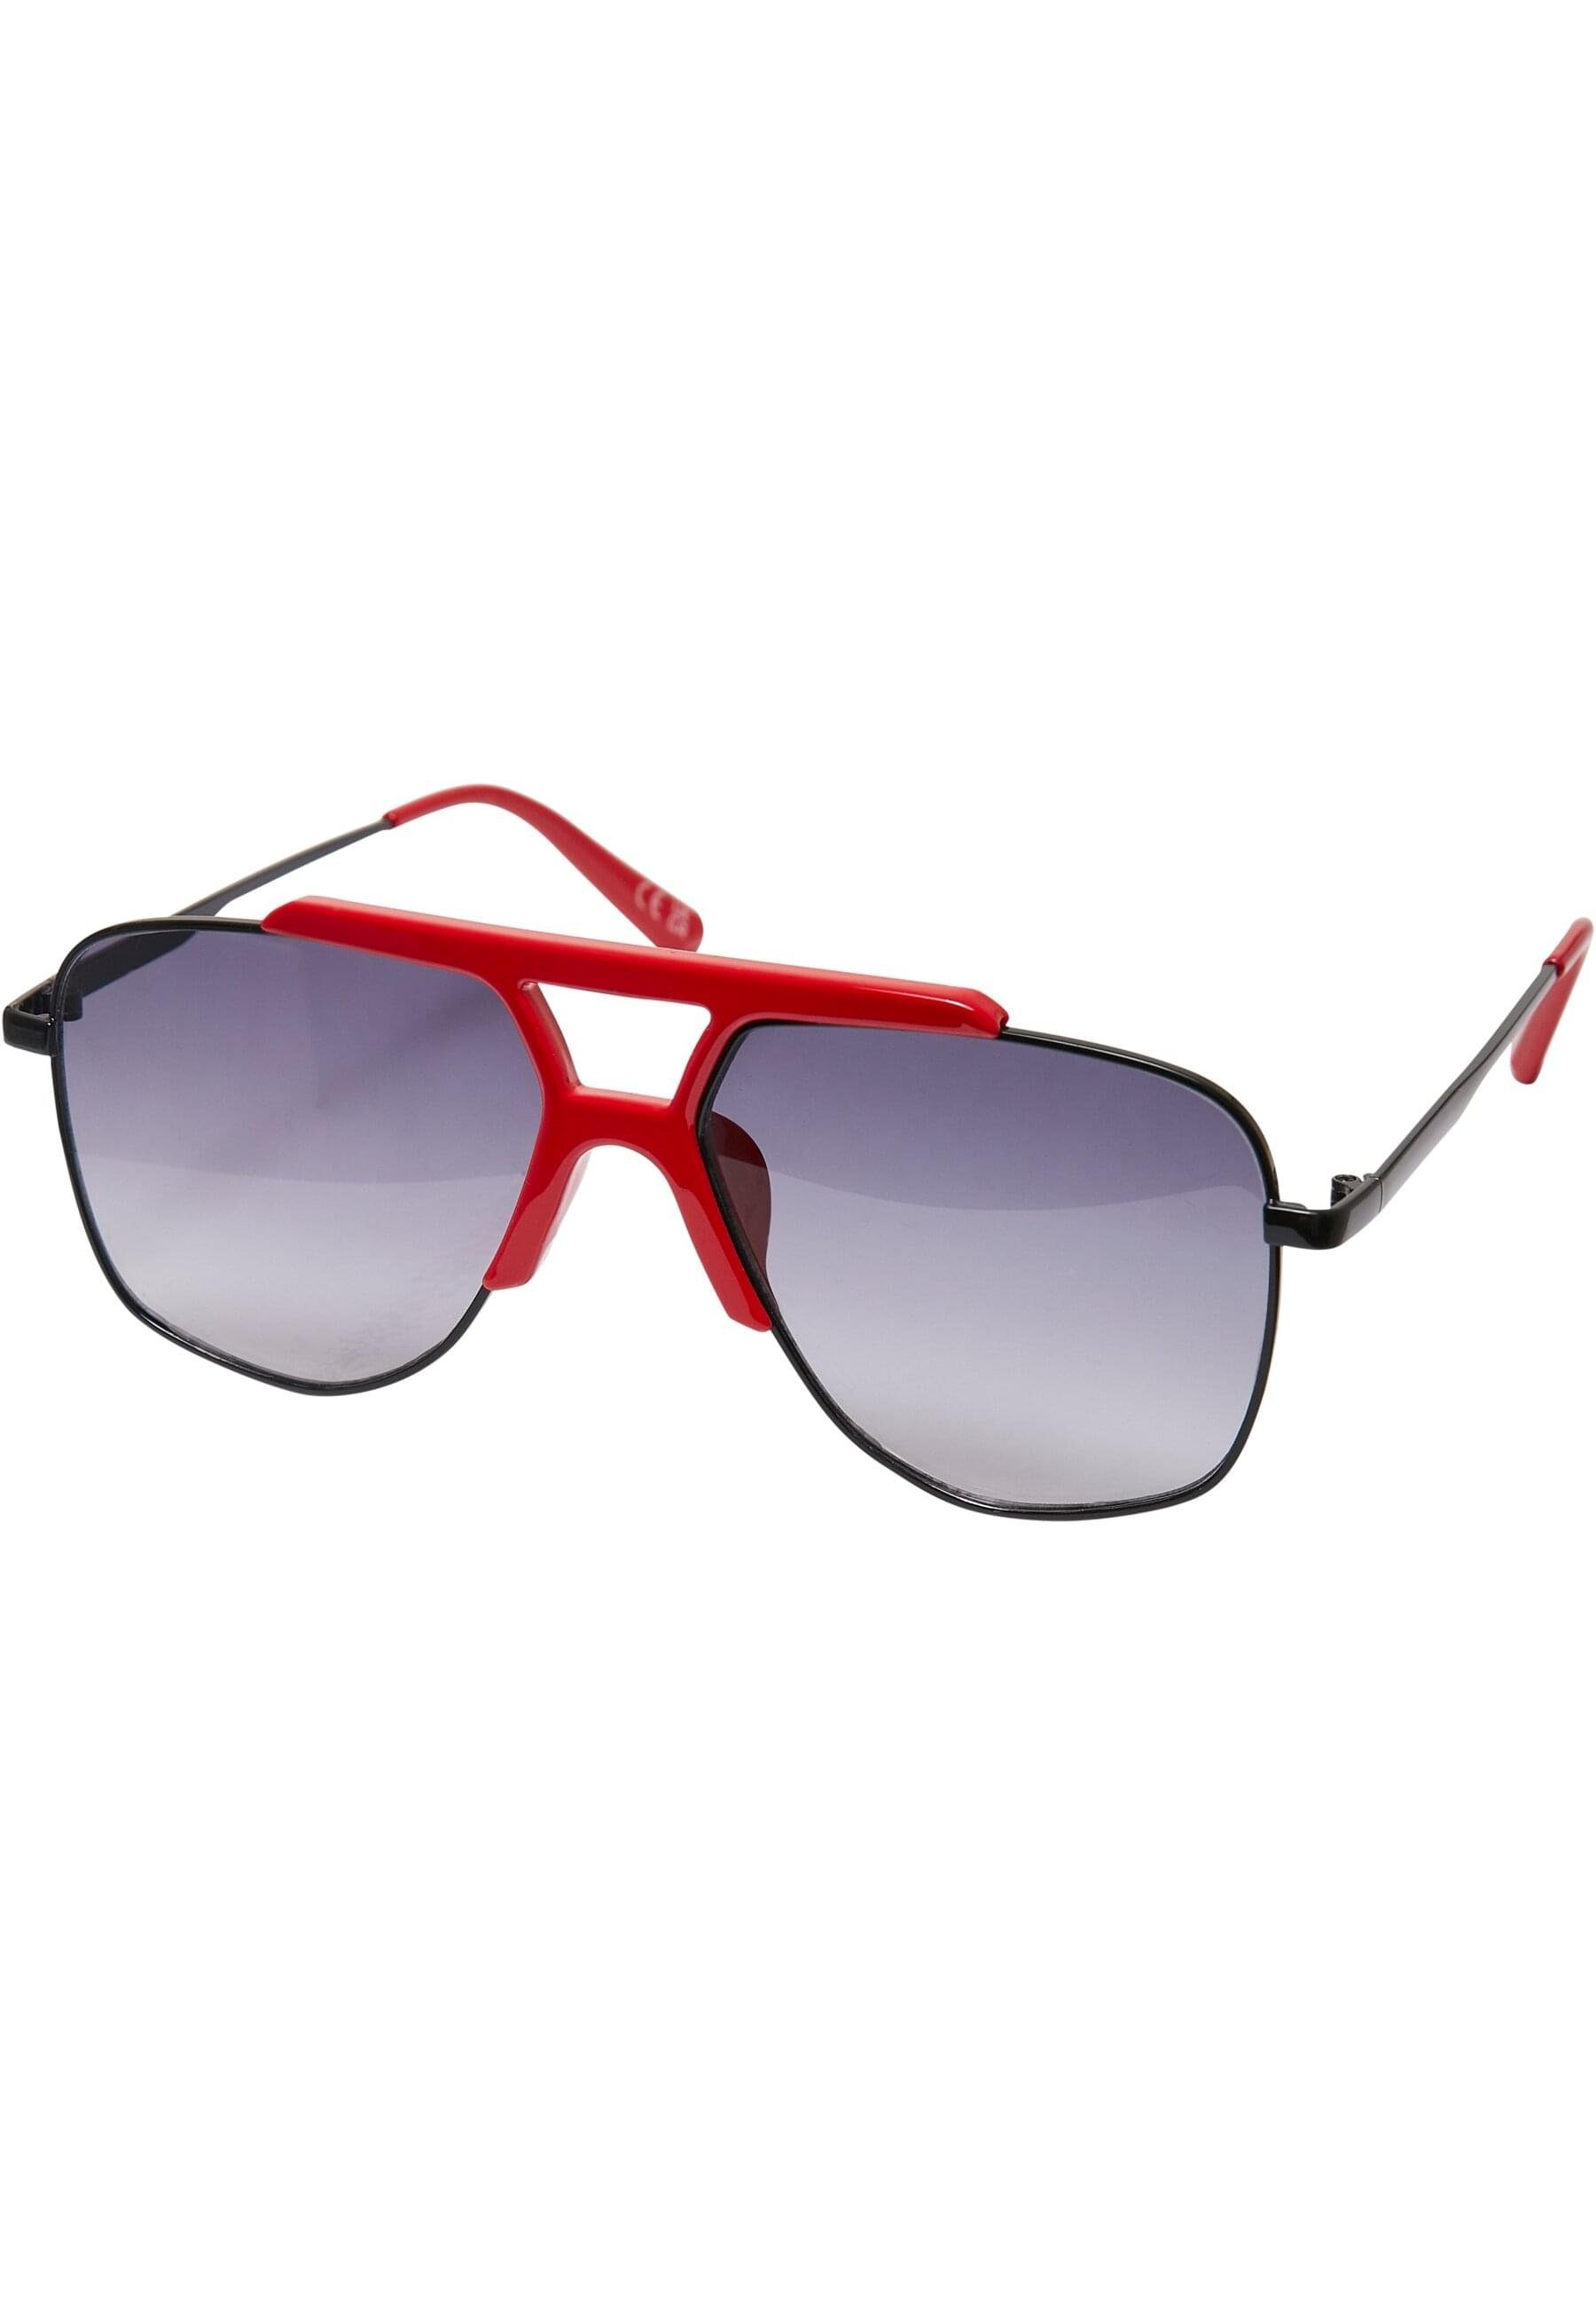 Sunglasses hugered/black Saint Tropez Unisex Sonnenbrille URBAN CLASSICS